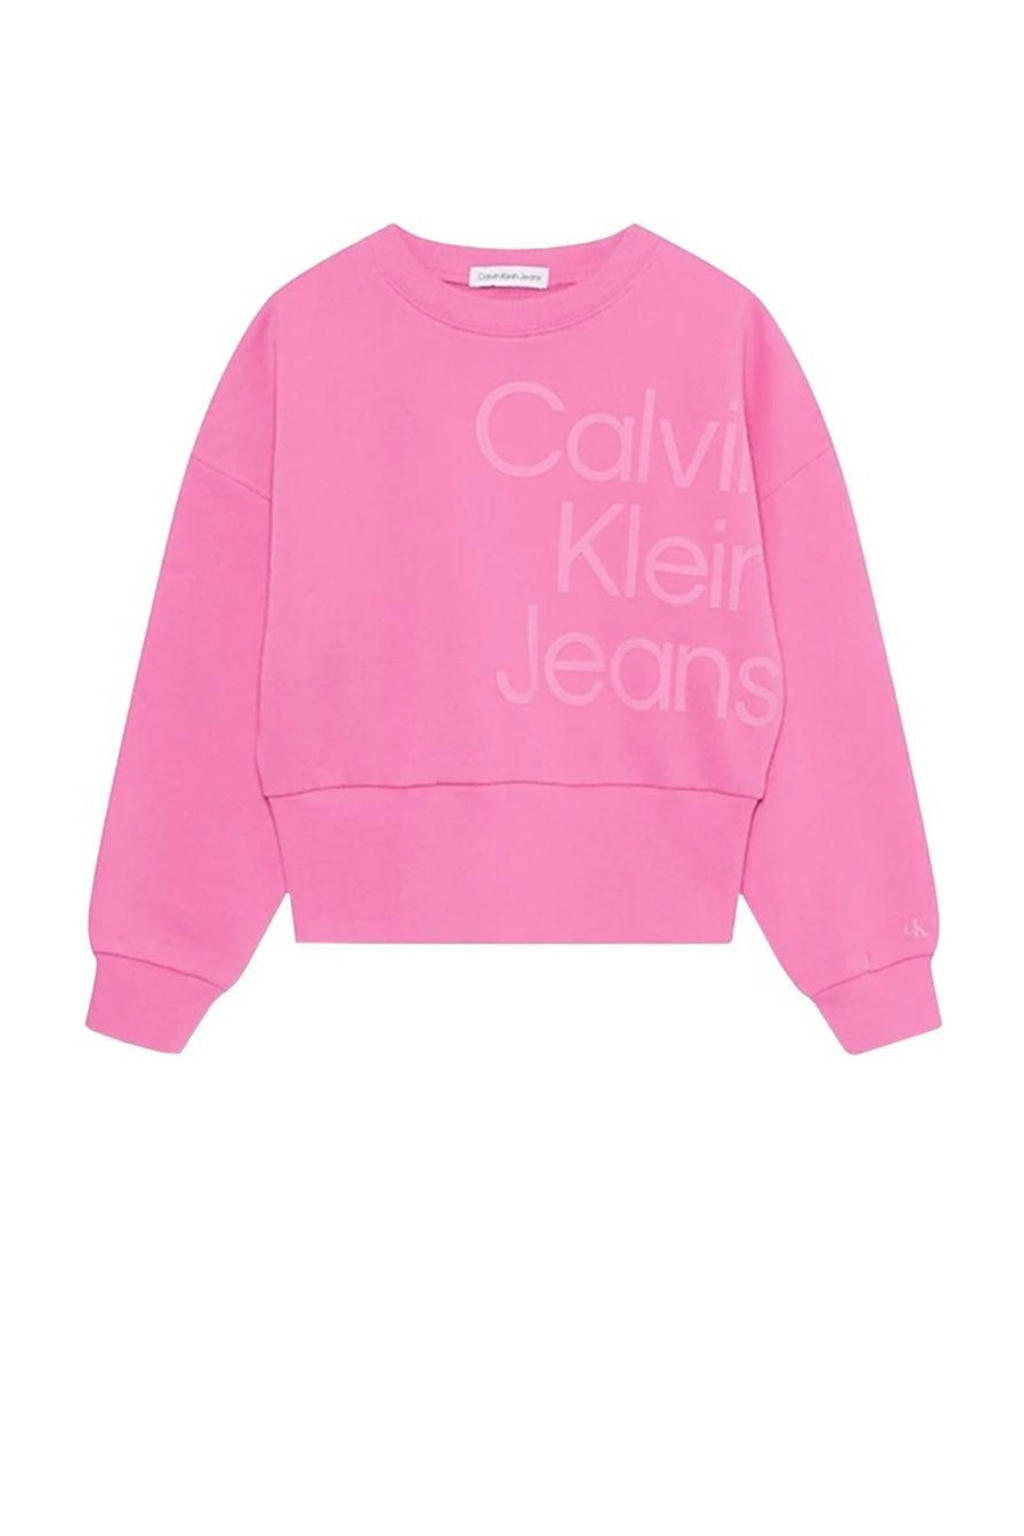 Roze meisjes Calvin Klein sweater met logo dessin, lange mouwen, ronde hals en geribde boorden